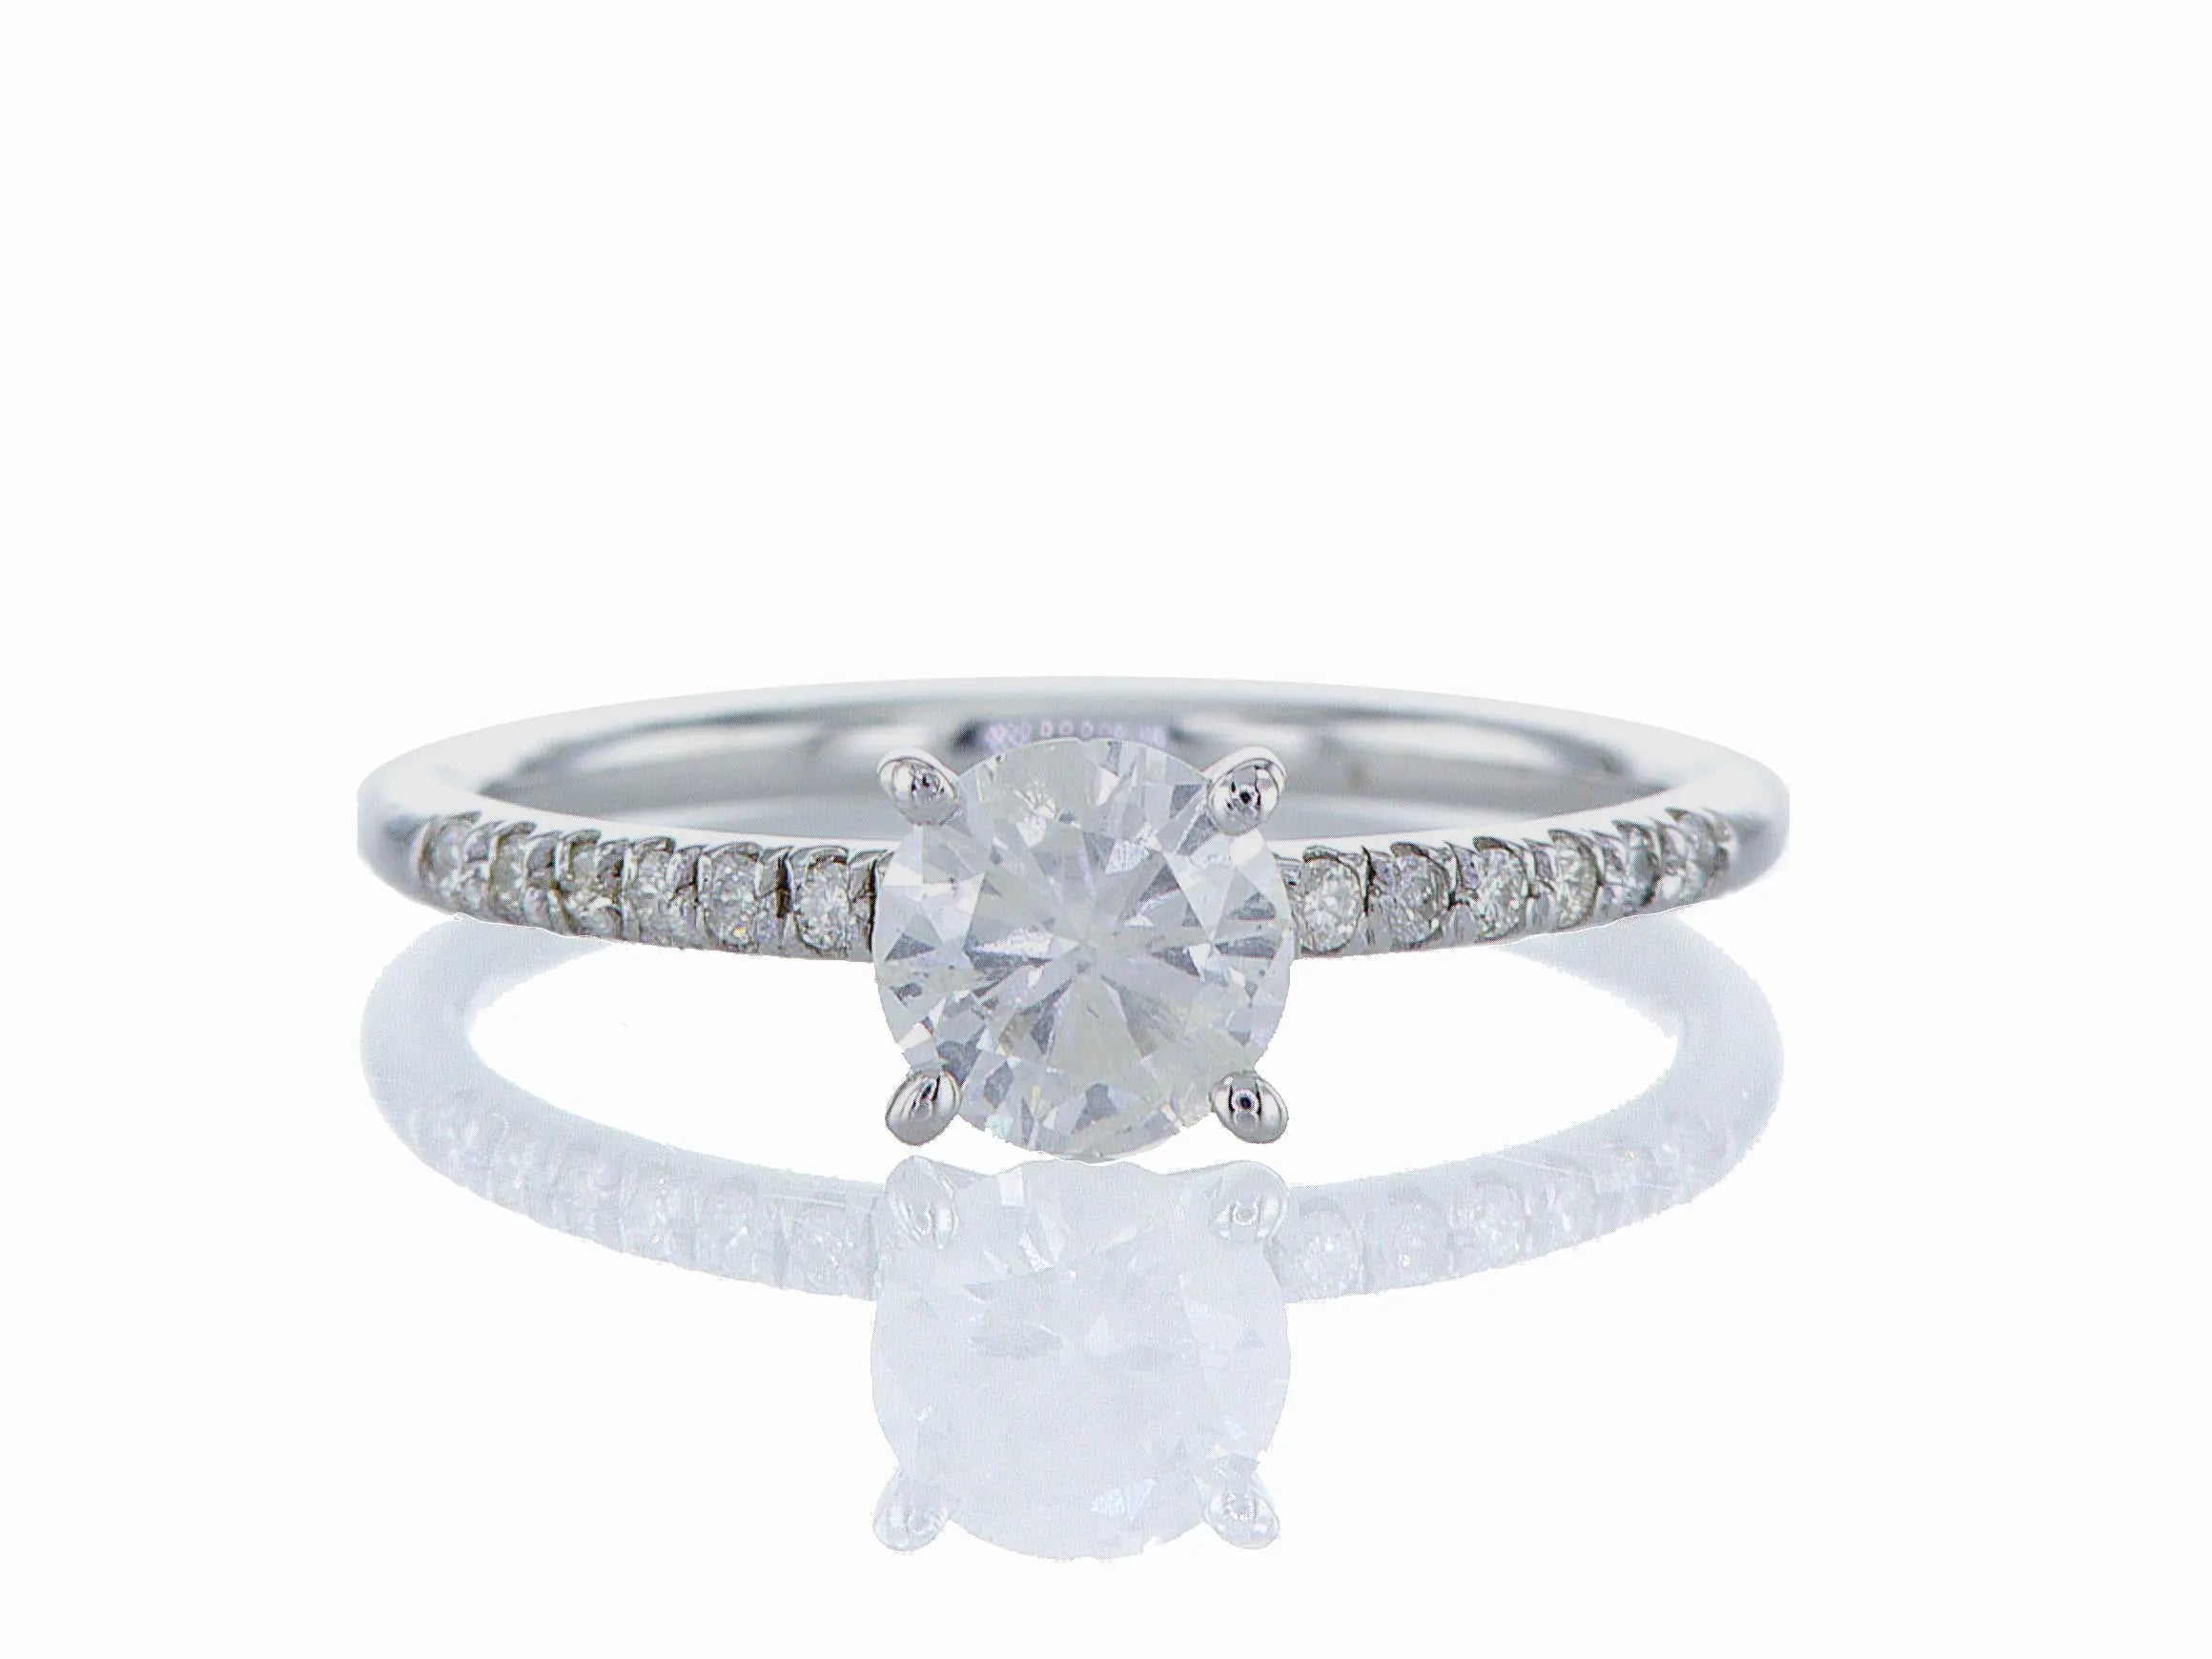 טבעת אירוסין שי-לי Fermond Jewelery